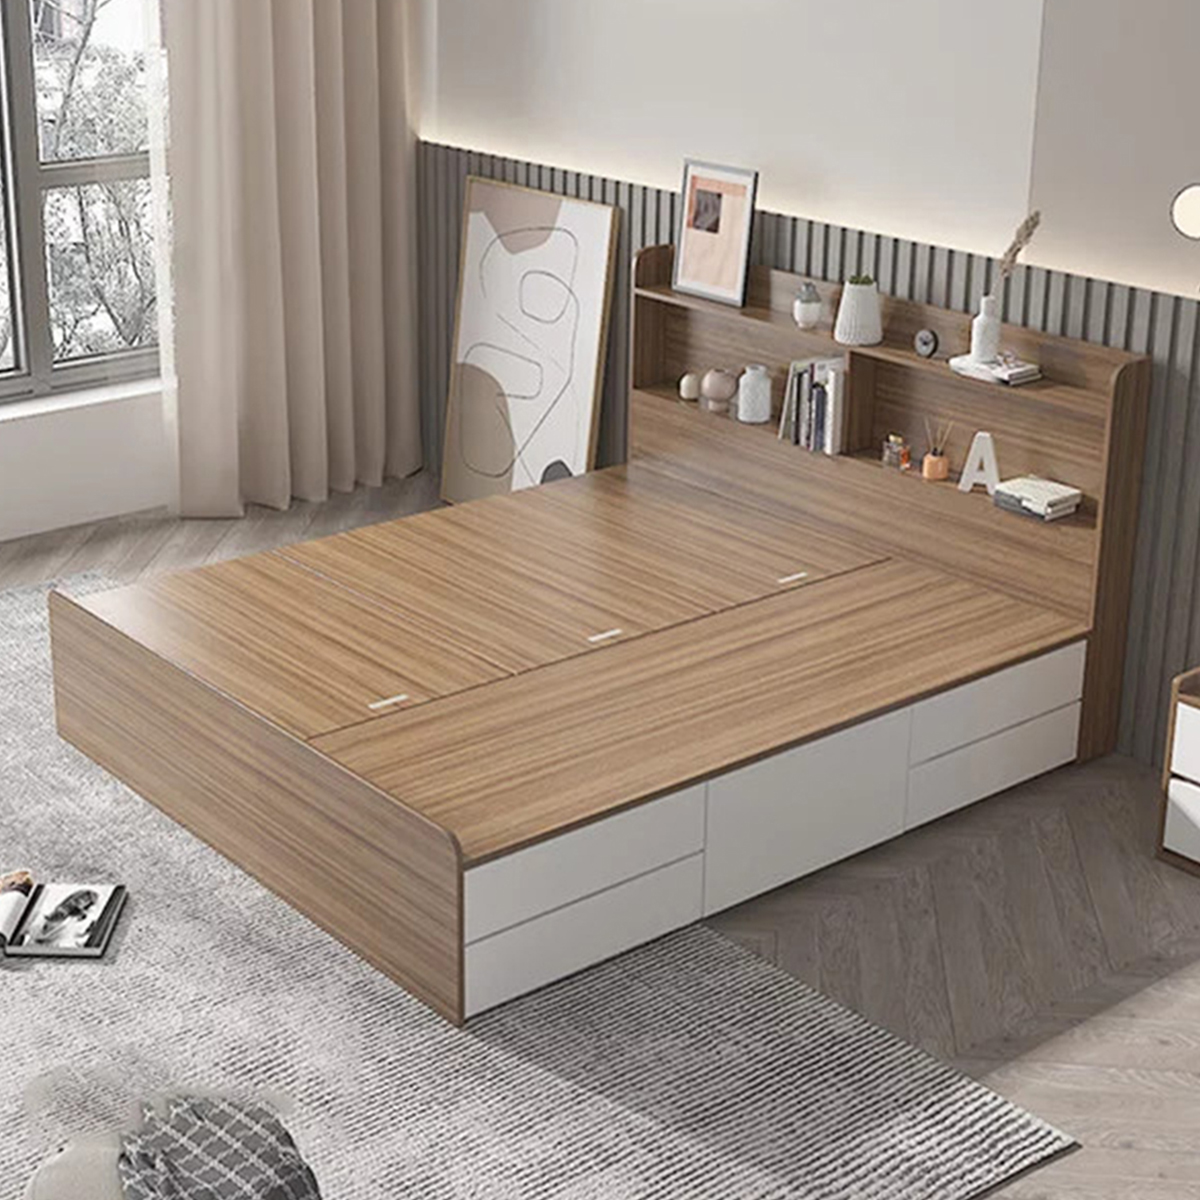 Mẫu giường gỗ công nghiệp kết hợp kệ trang trí đầu giường sản xuất theo yêu cầu khách hàng 